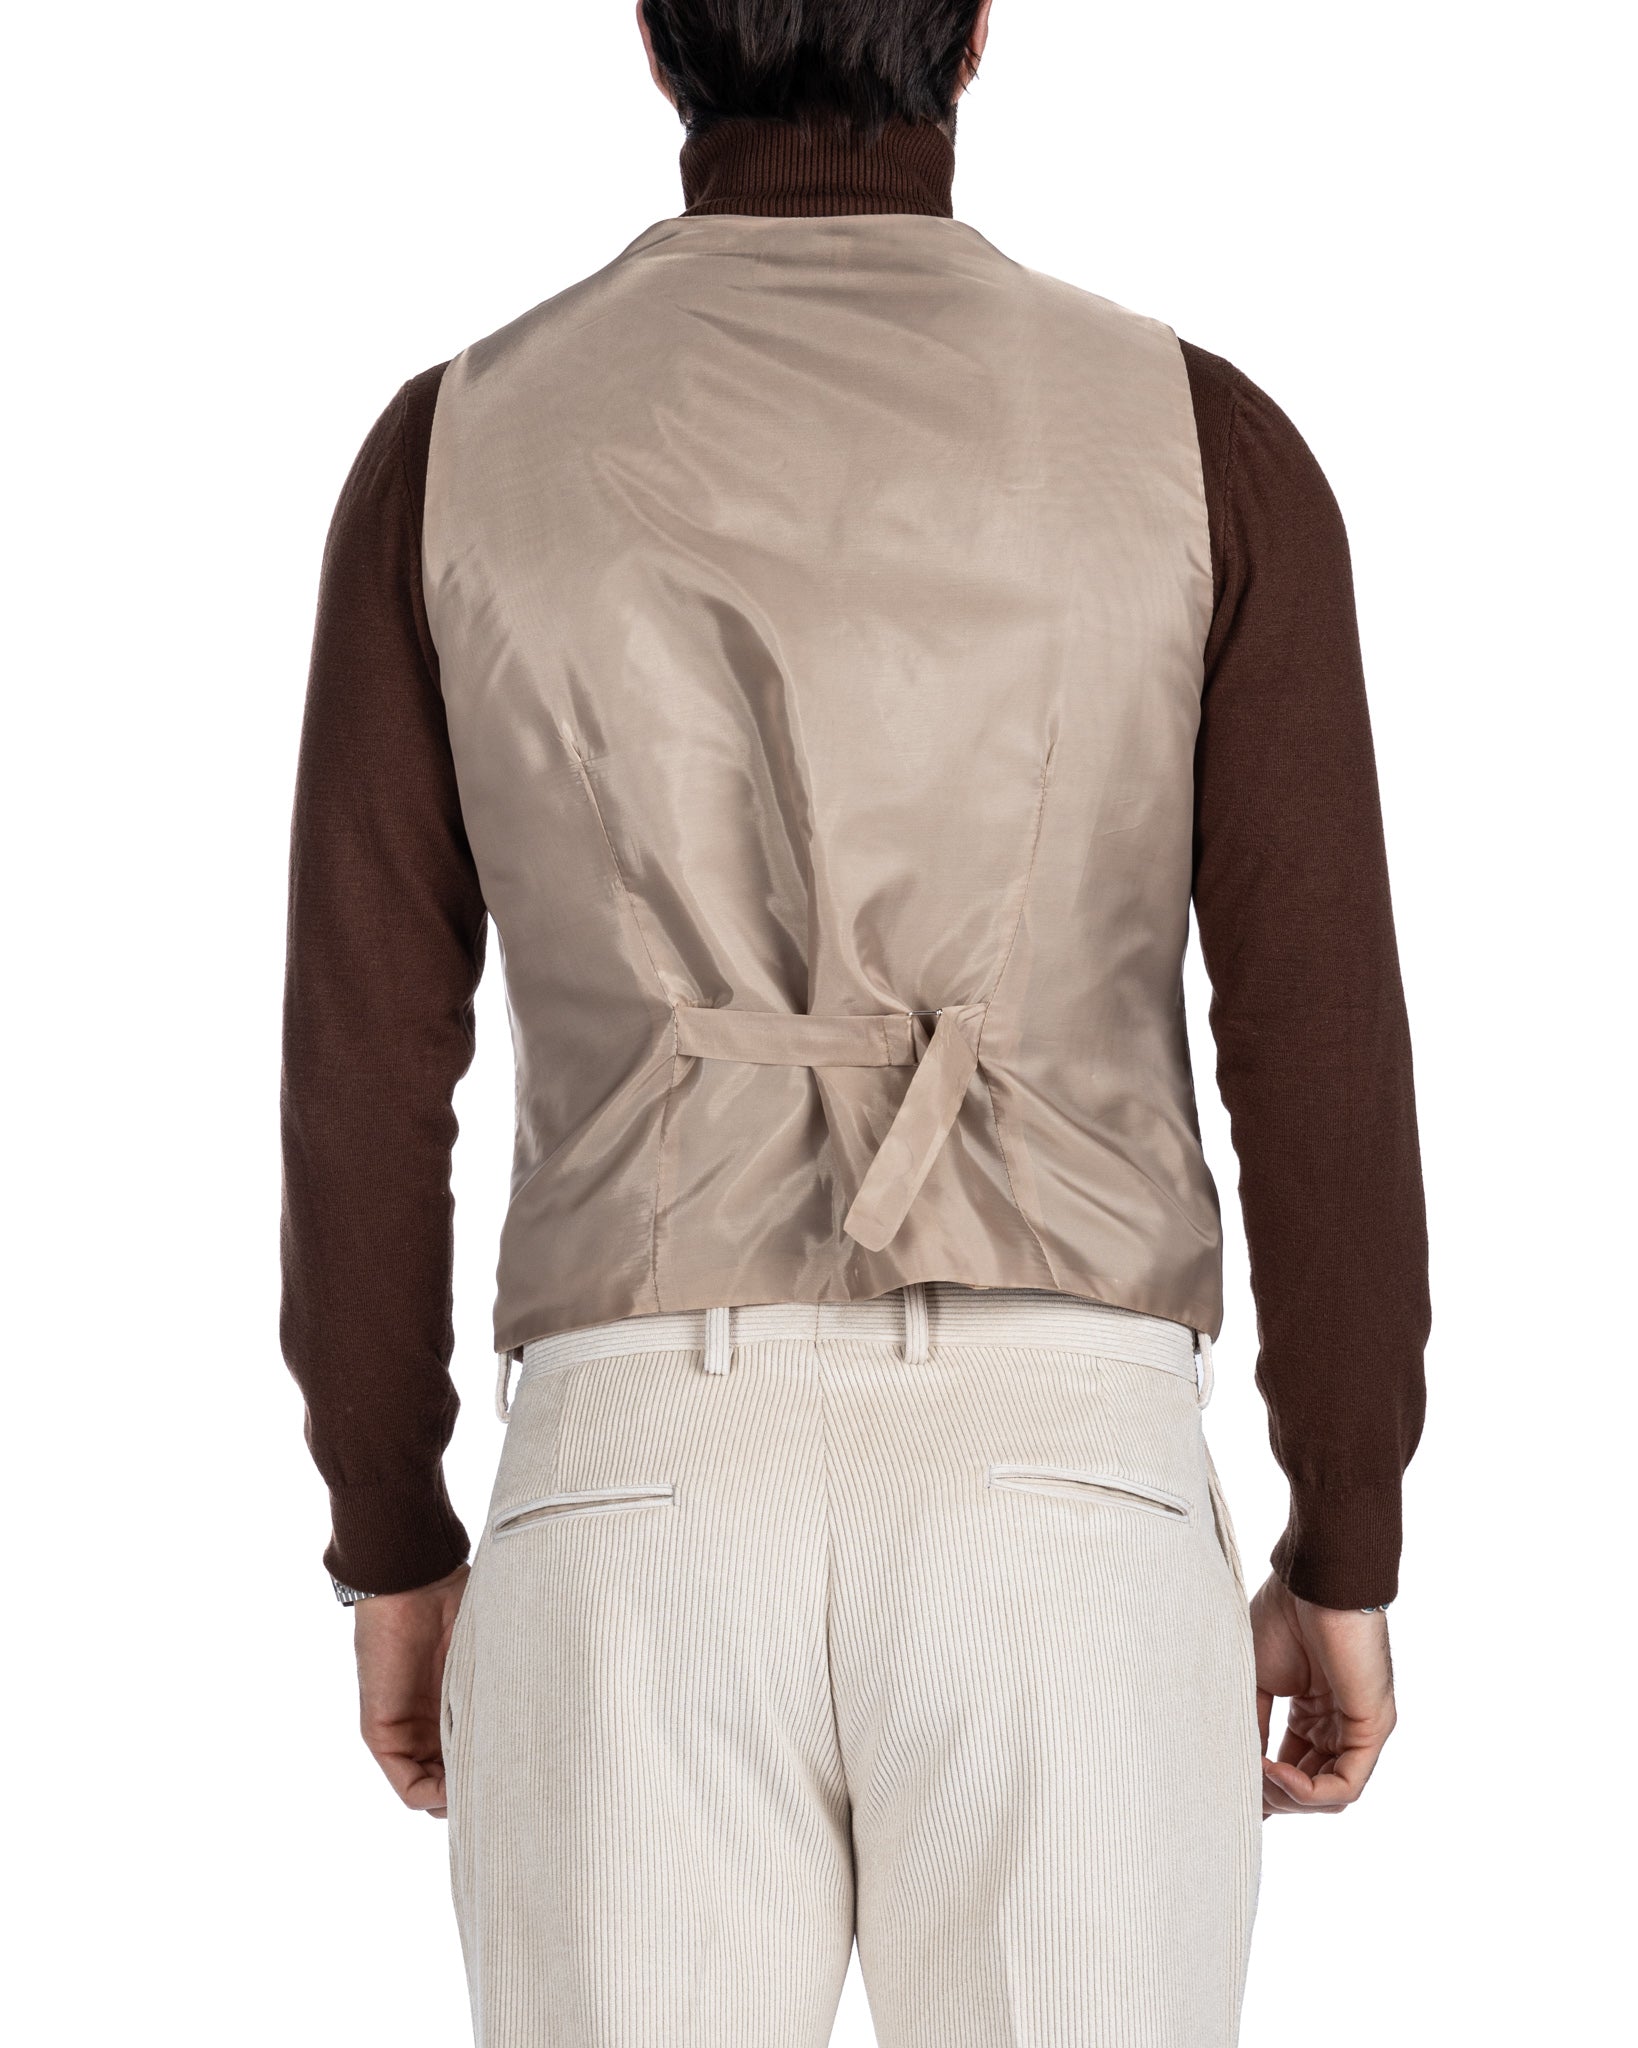 Mads - cream velvet waistcoat